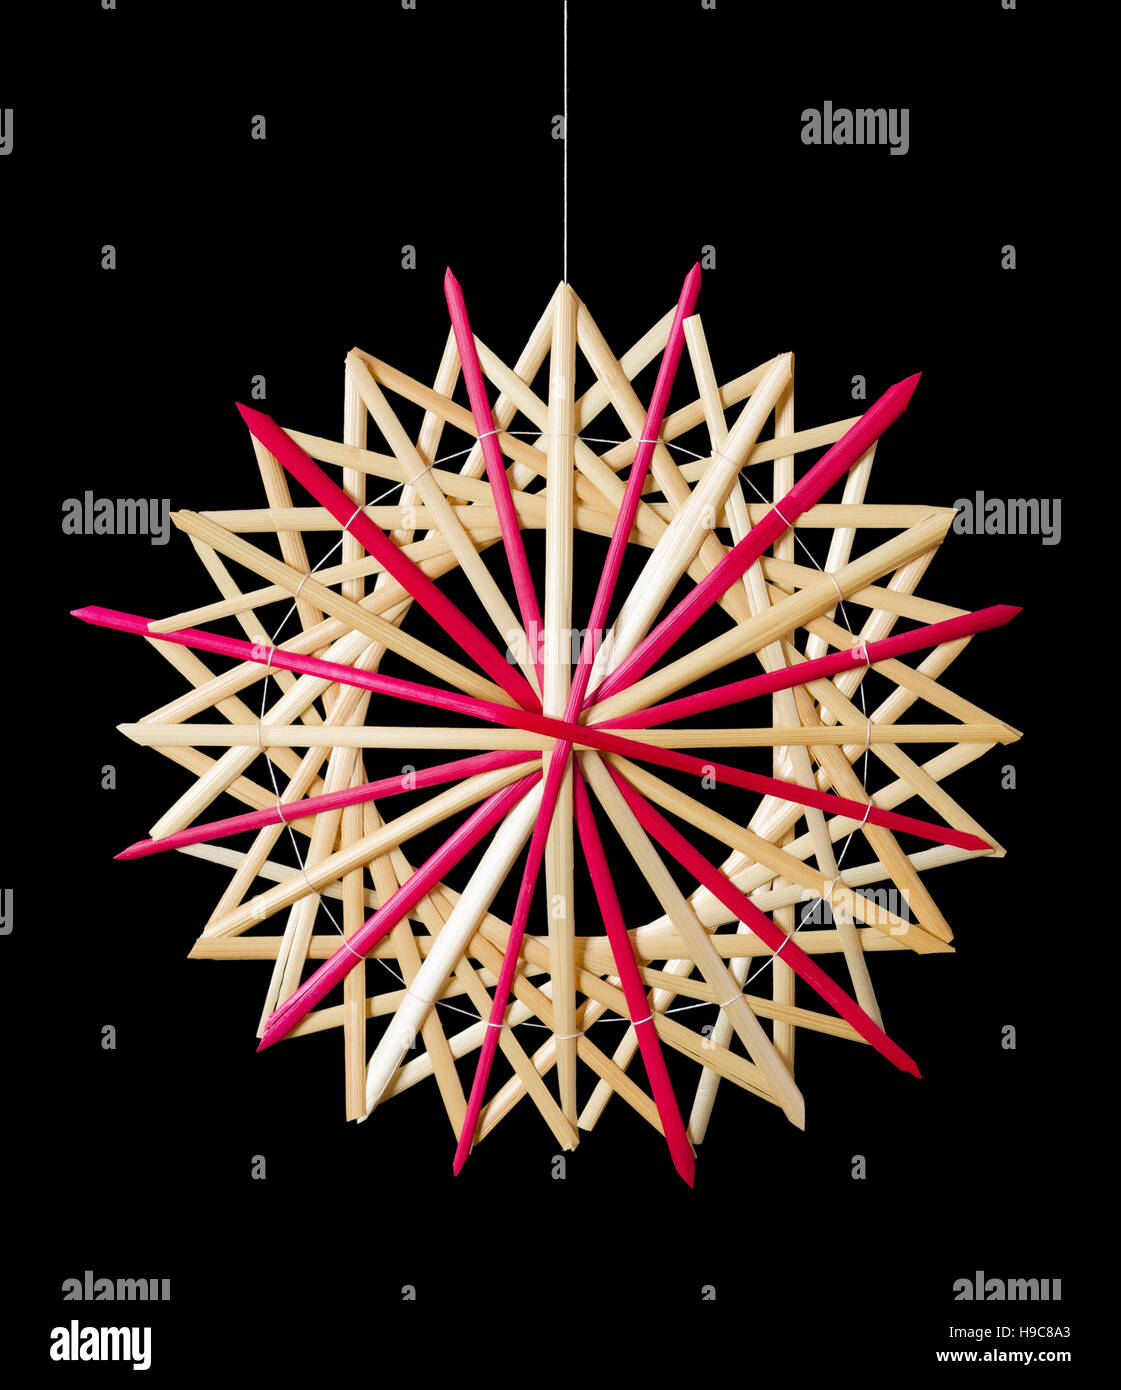 Stroh Weihnachtsdekoration Stern auf schwarzem Hintergrund. Handgefertigte farbenfrohe Dekor für Windows, als Geschenk oder an den Weihnachtsbaum hängen. Stockfoto